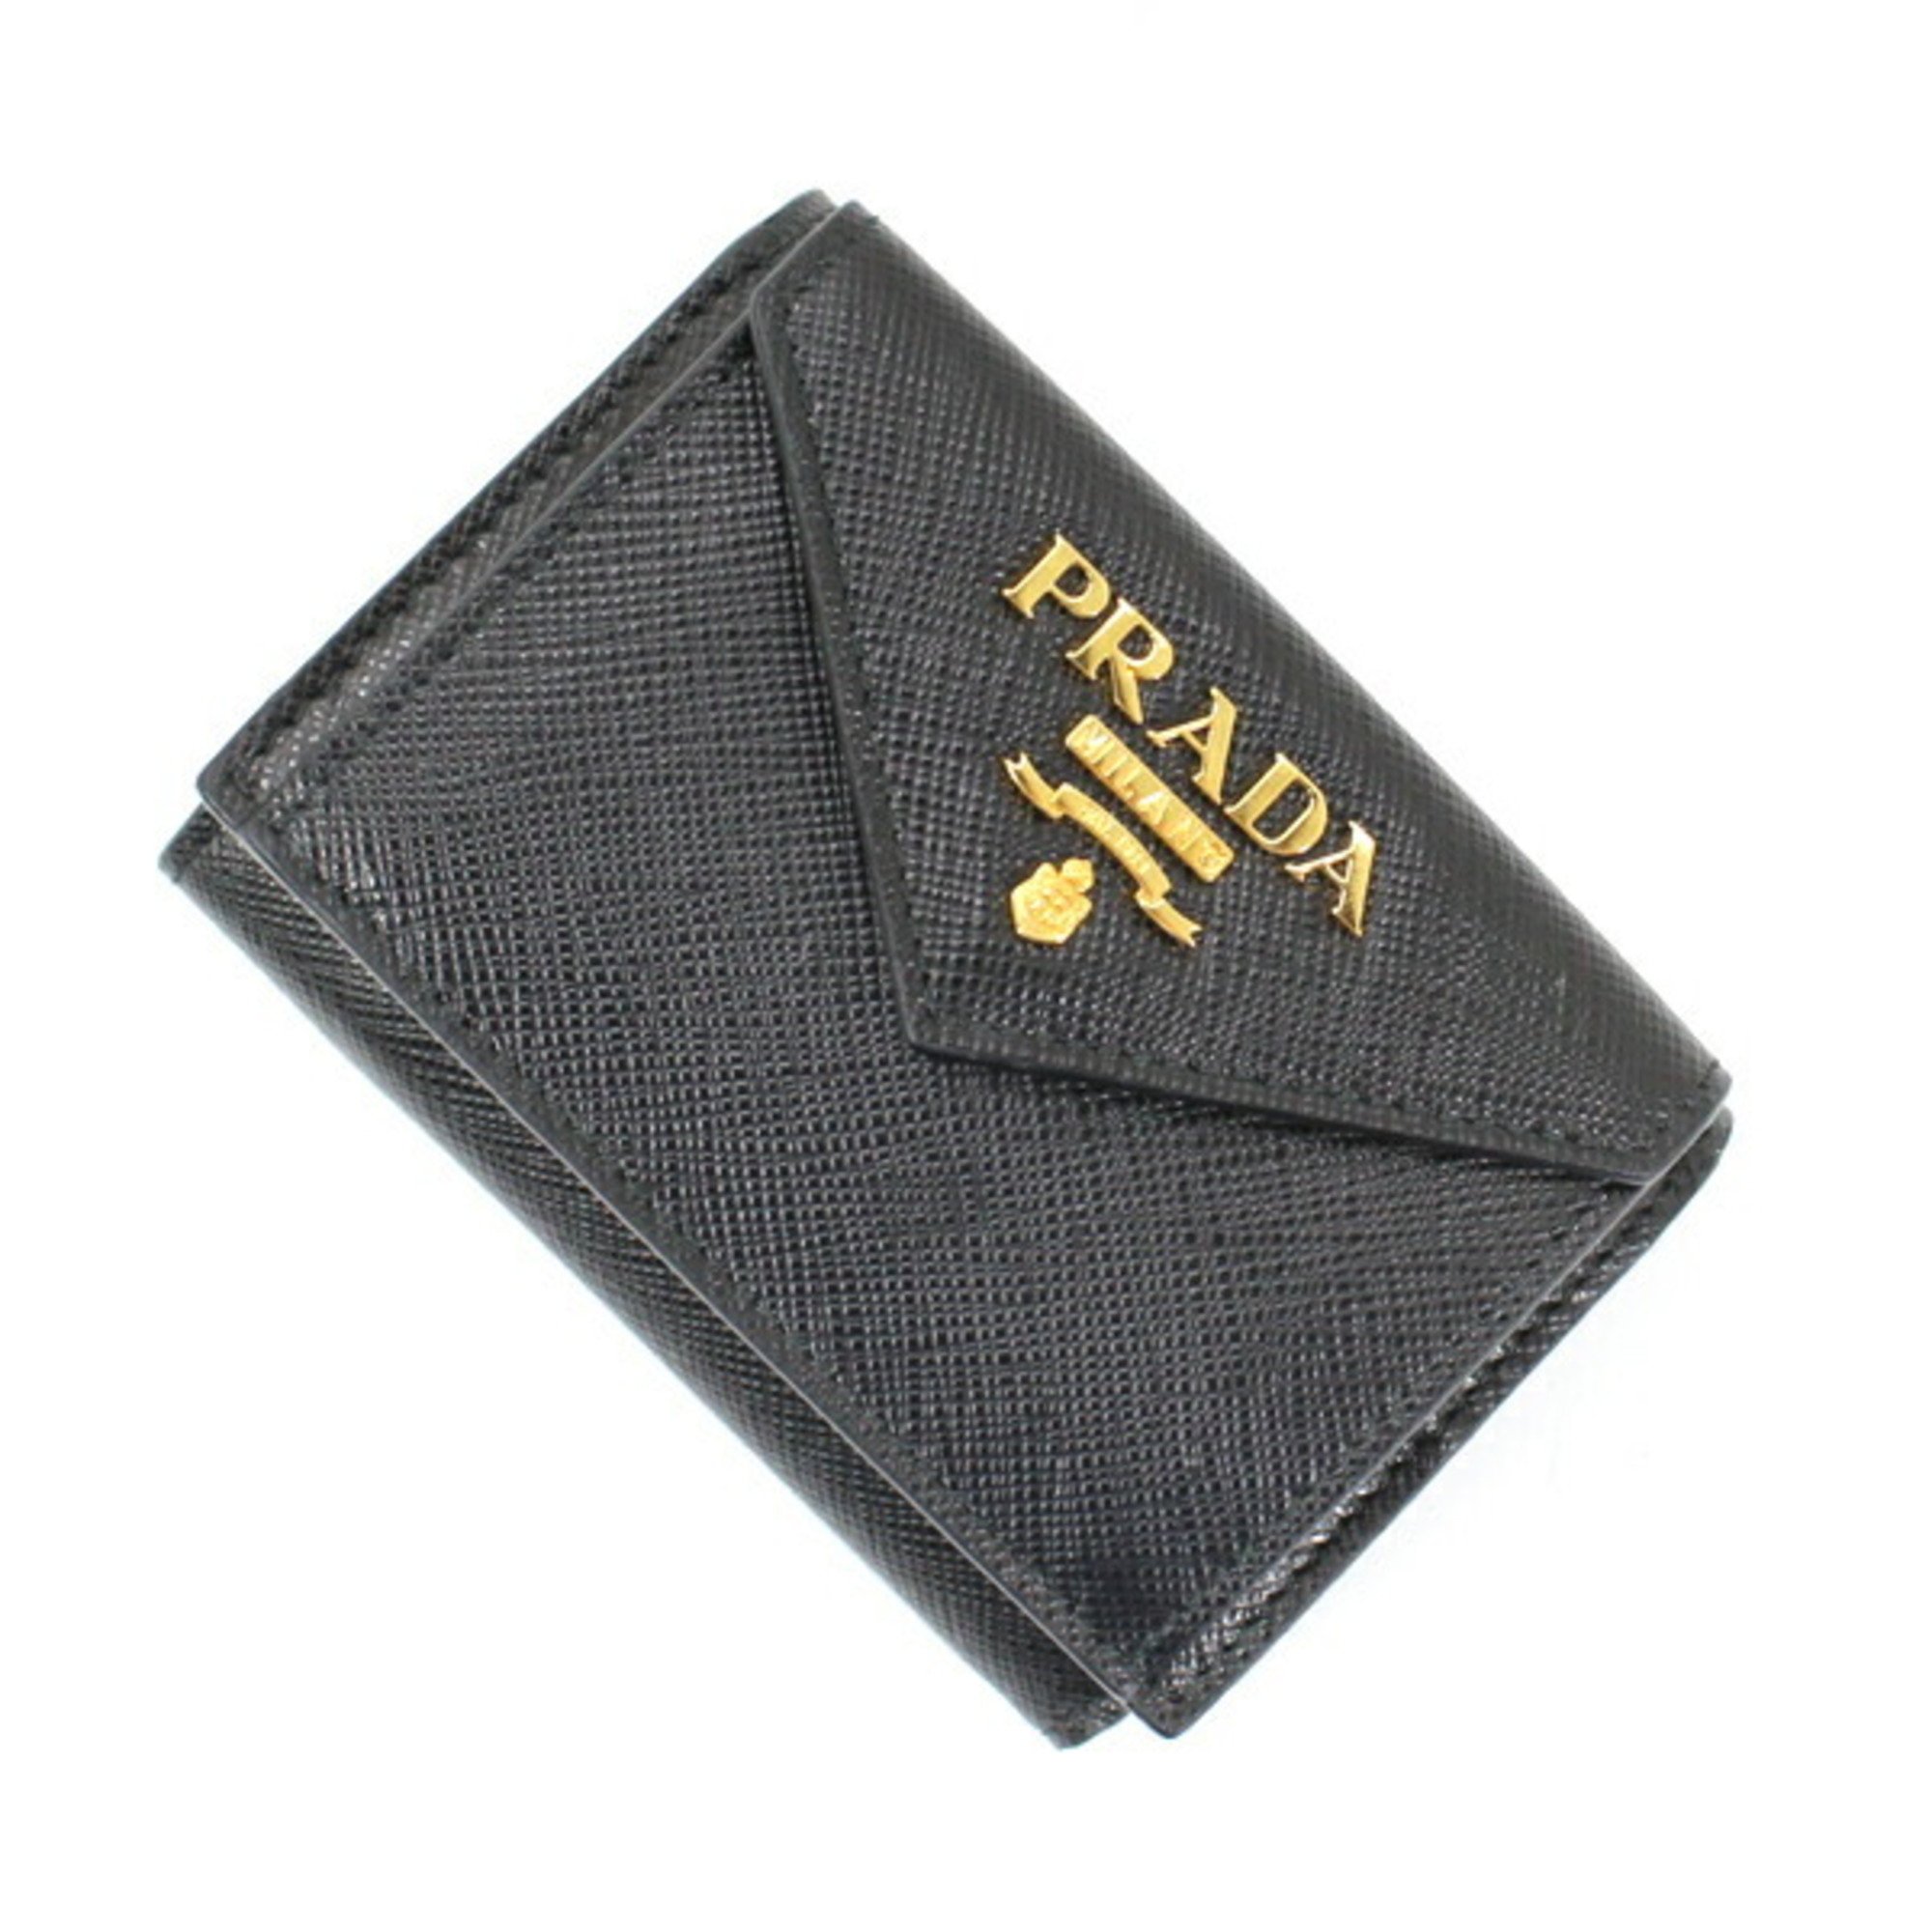 Prada Wallet Tri-fold Compact Small Black Coin Purse Wallet/Coin Case Folding Saffiano Leather Women Men PRADA 1MH021